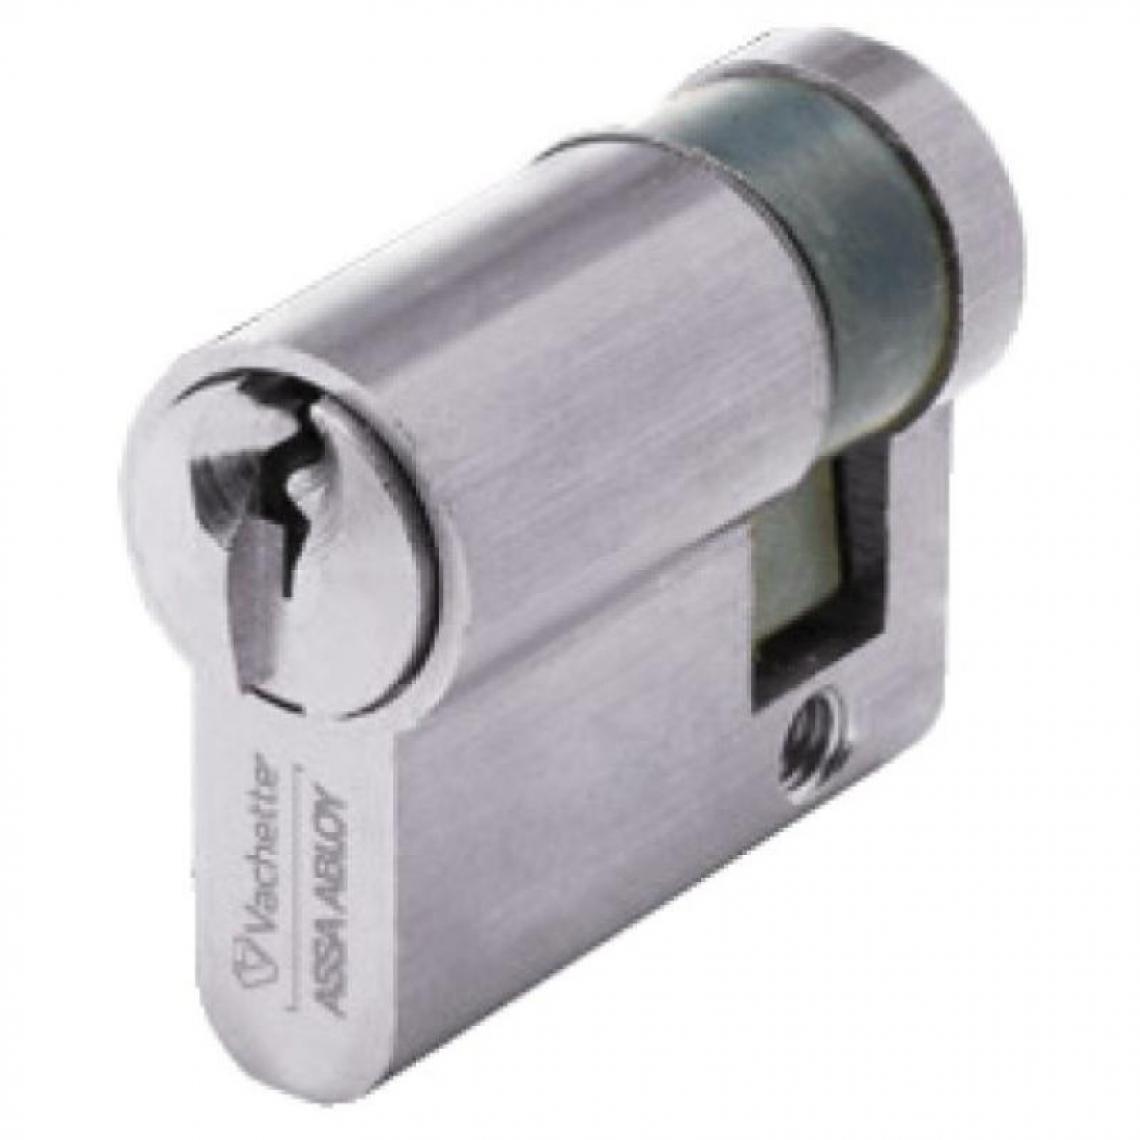 Vachette - Cylindre simple breveté type Néo à clé protégée varié 3 clés 55 x - Serrure